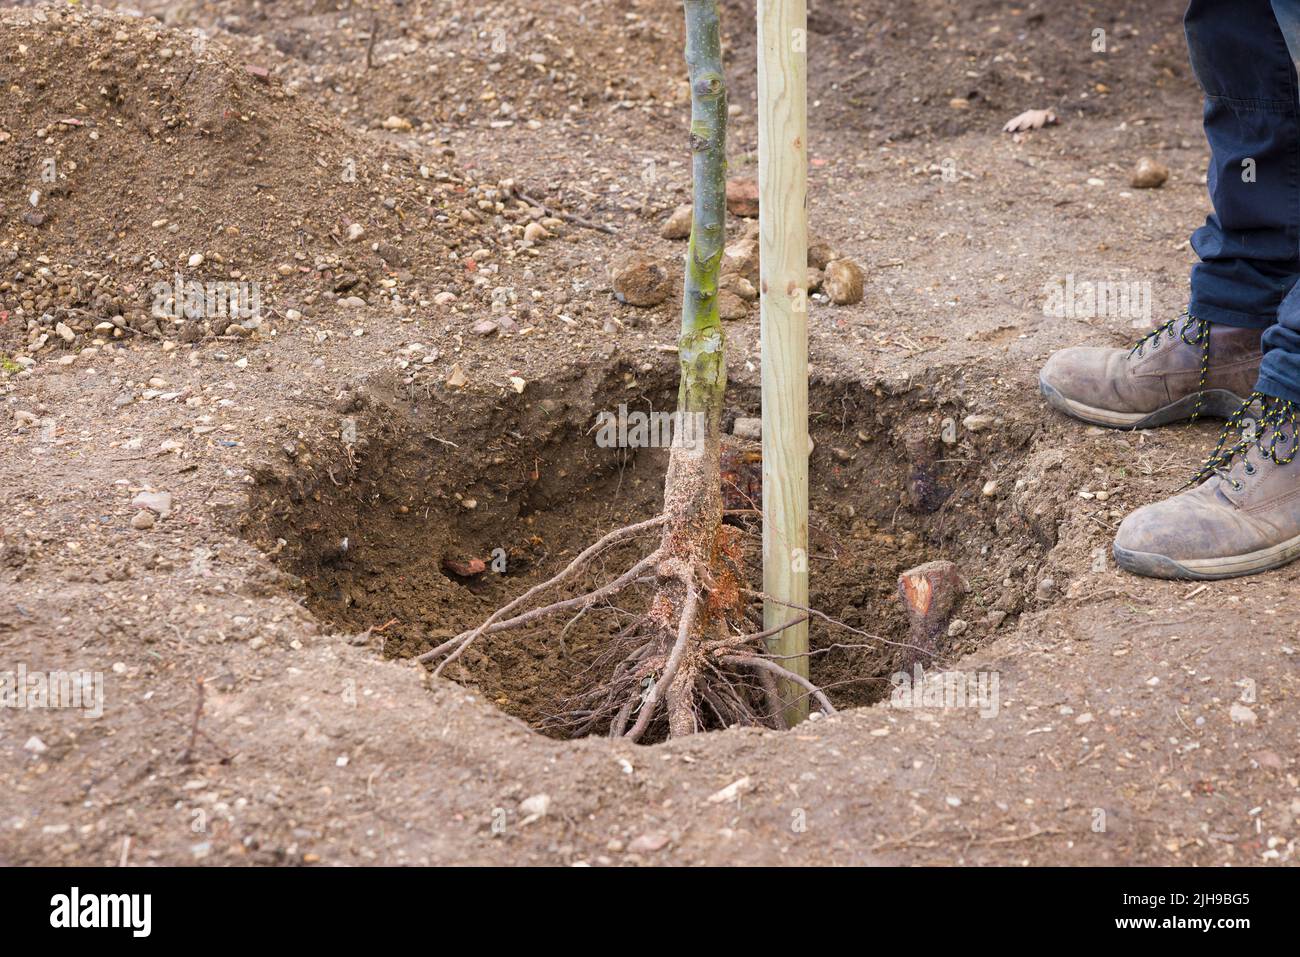 Plantar y estampar una raíz desnuda en un agujero en un jardín del Reino Unido. Chanticlear ornamental pera árbol estándar. Foto de stock